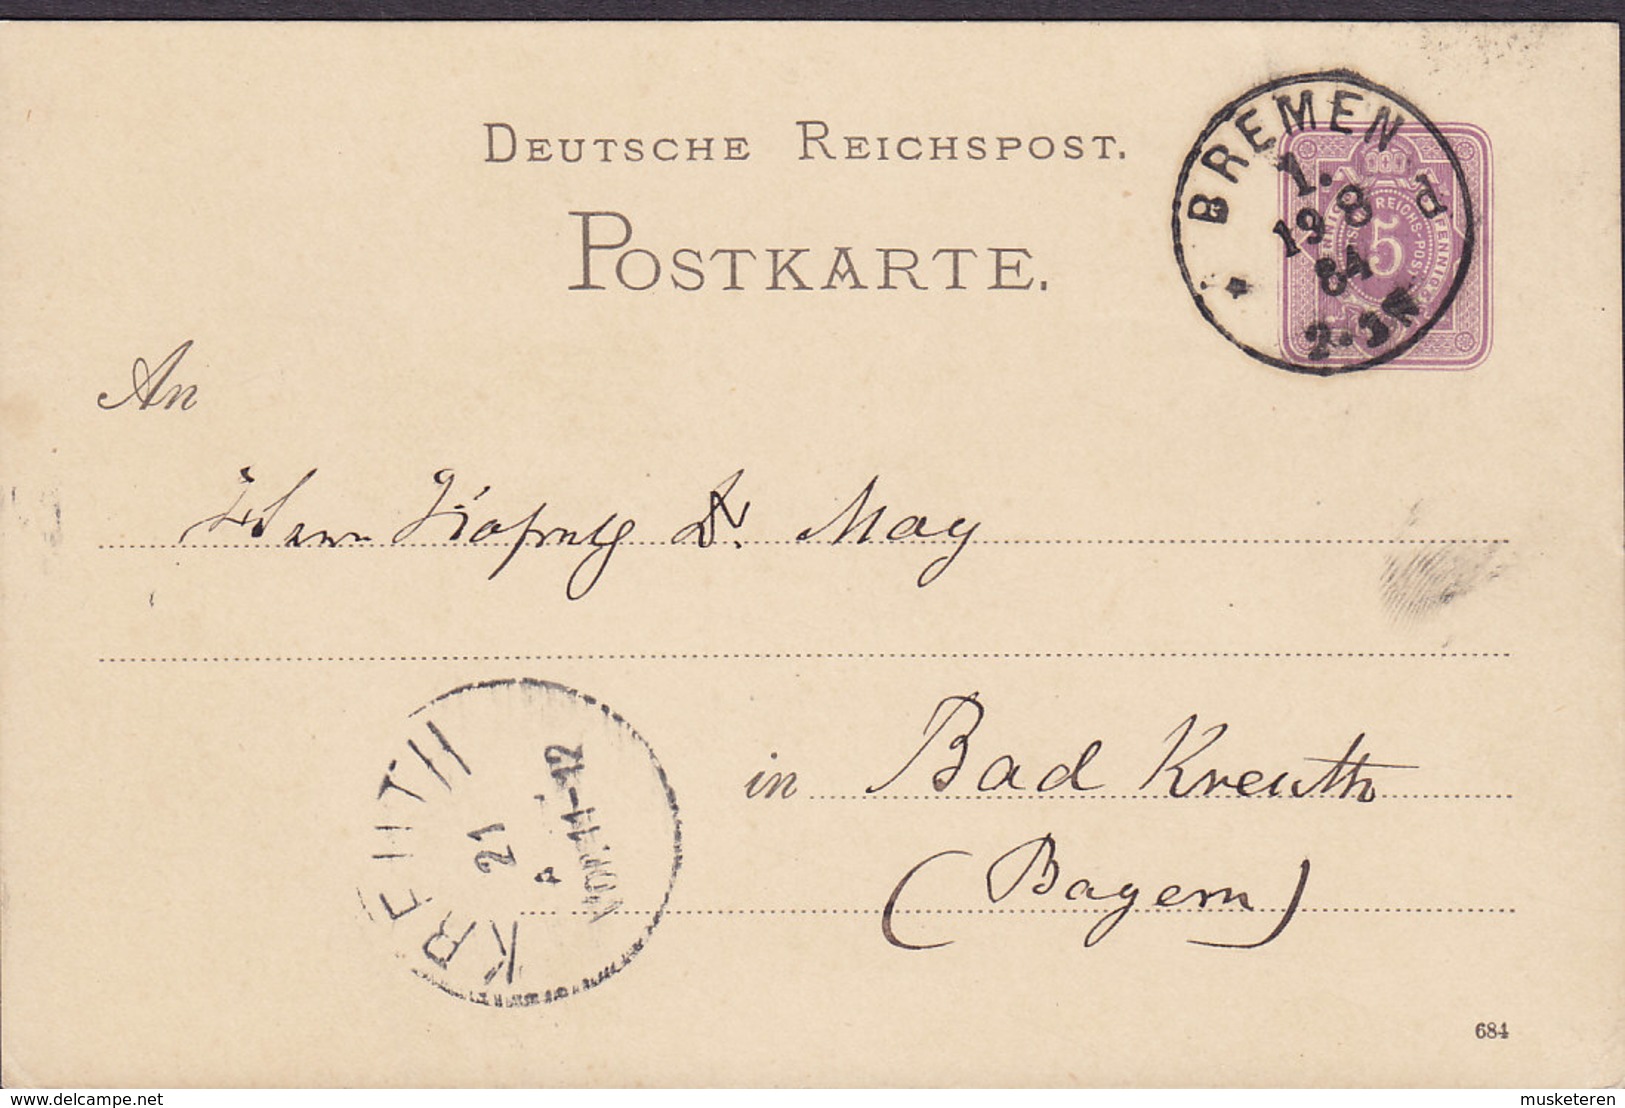 Germany Deutsche Reichspost Postal Stationery Ganzsache 5 Pf. (684) BREMEN 1884 Bad KREUTH Bayern (Arr.) (2 Scans) - Cartoline